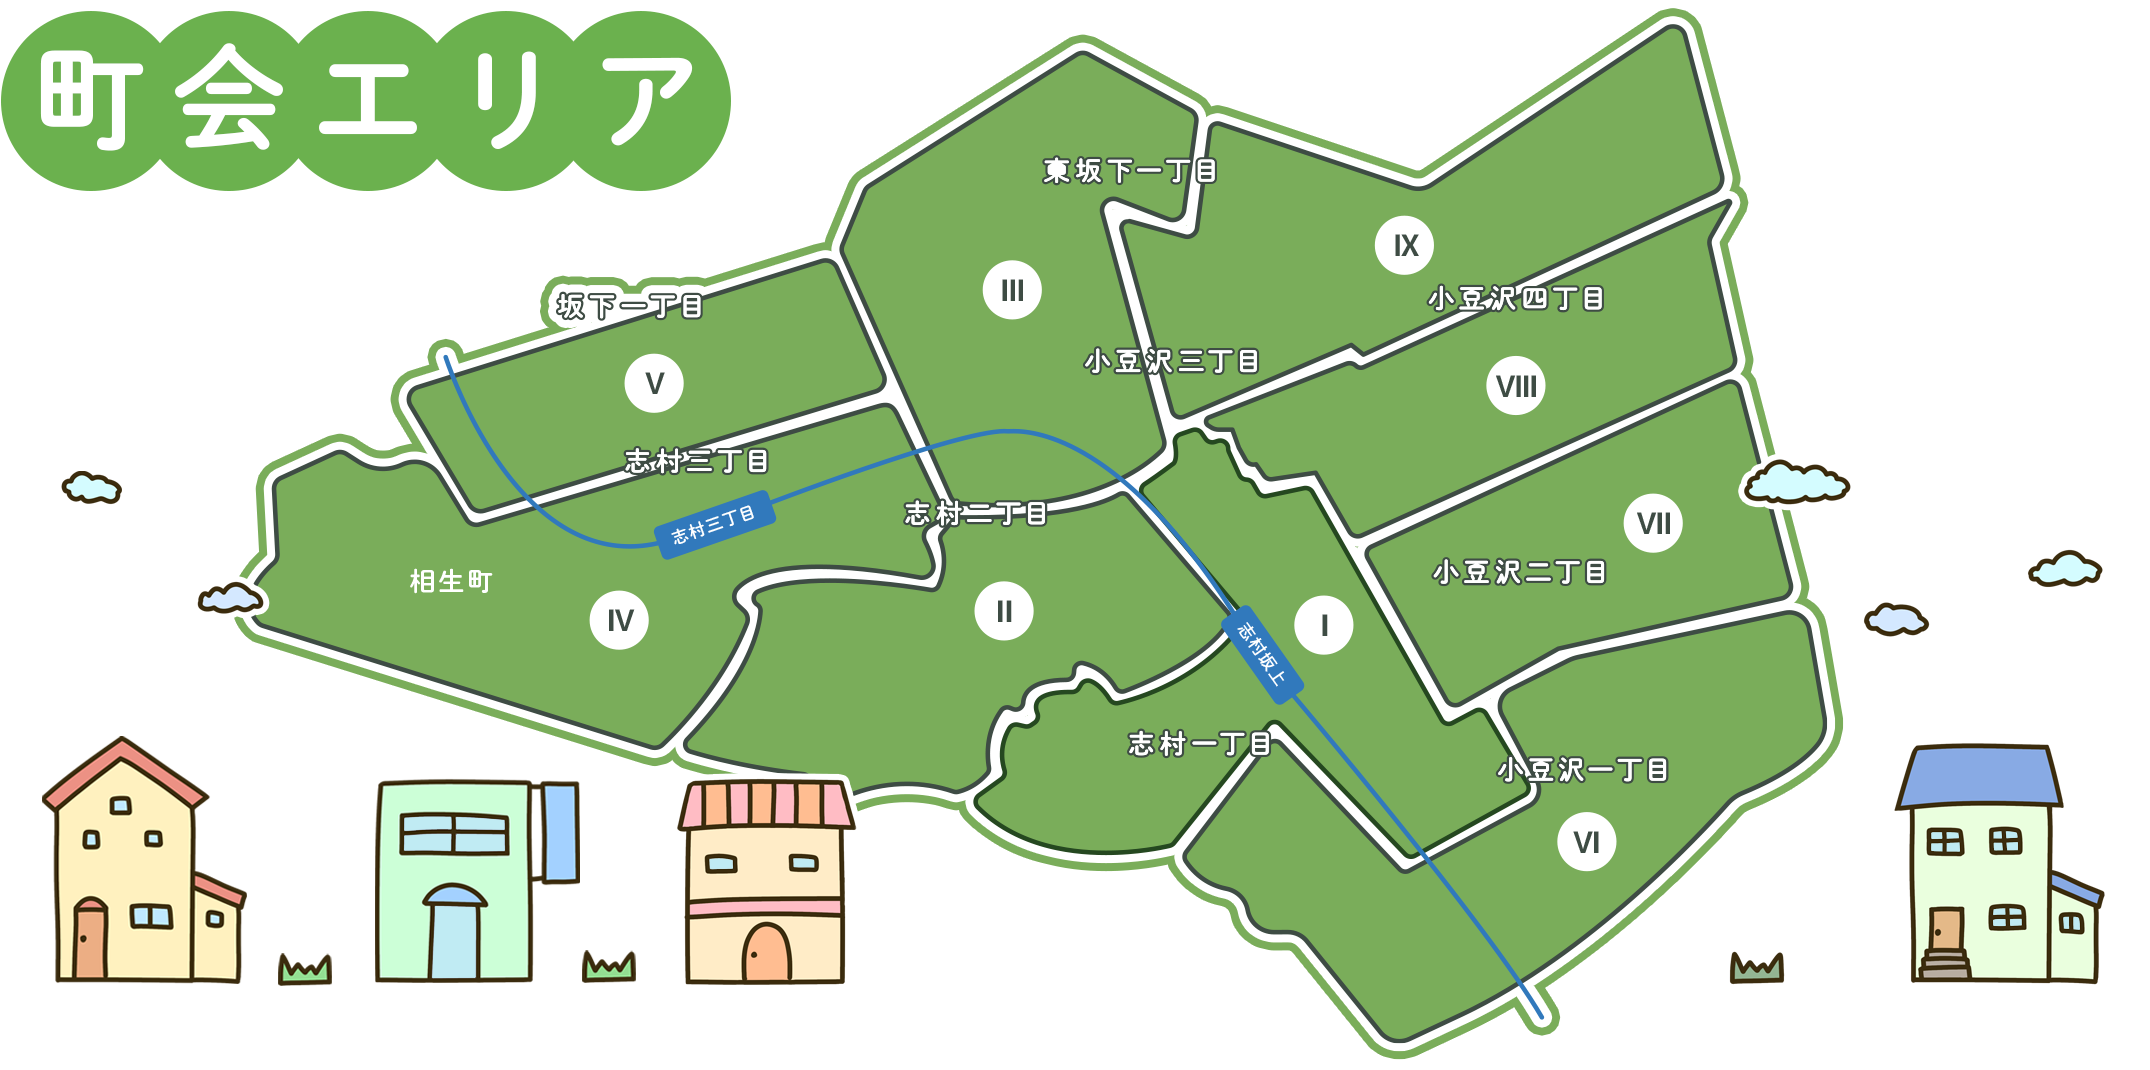 町会エリアのマップ